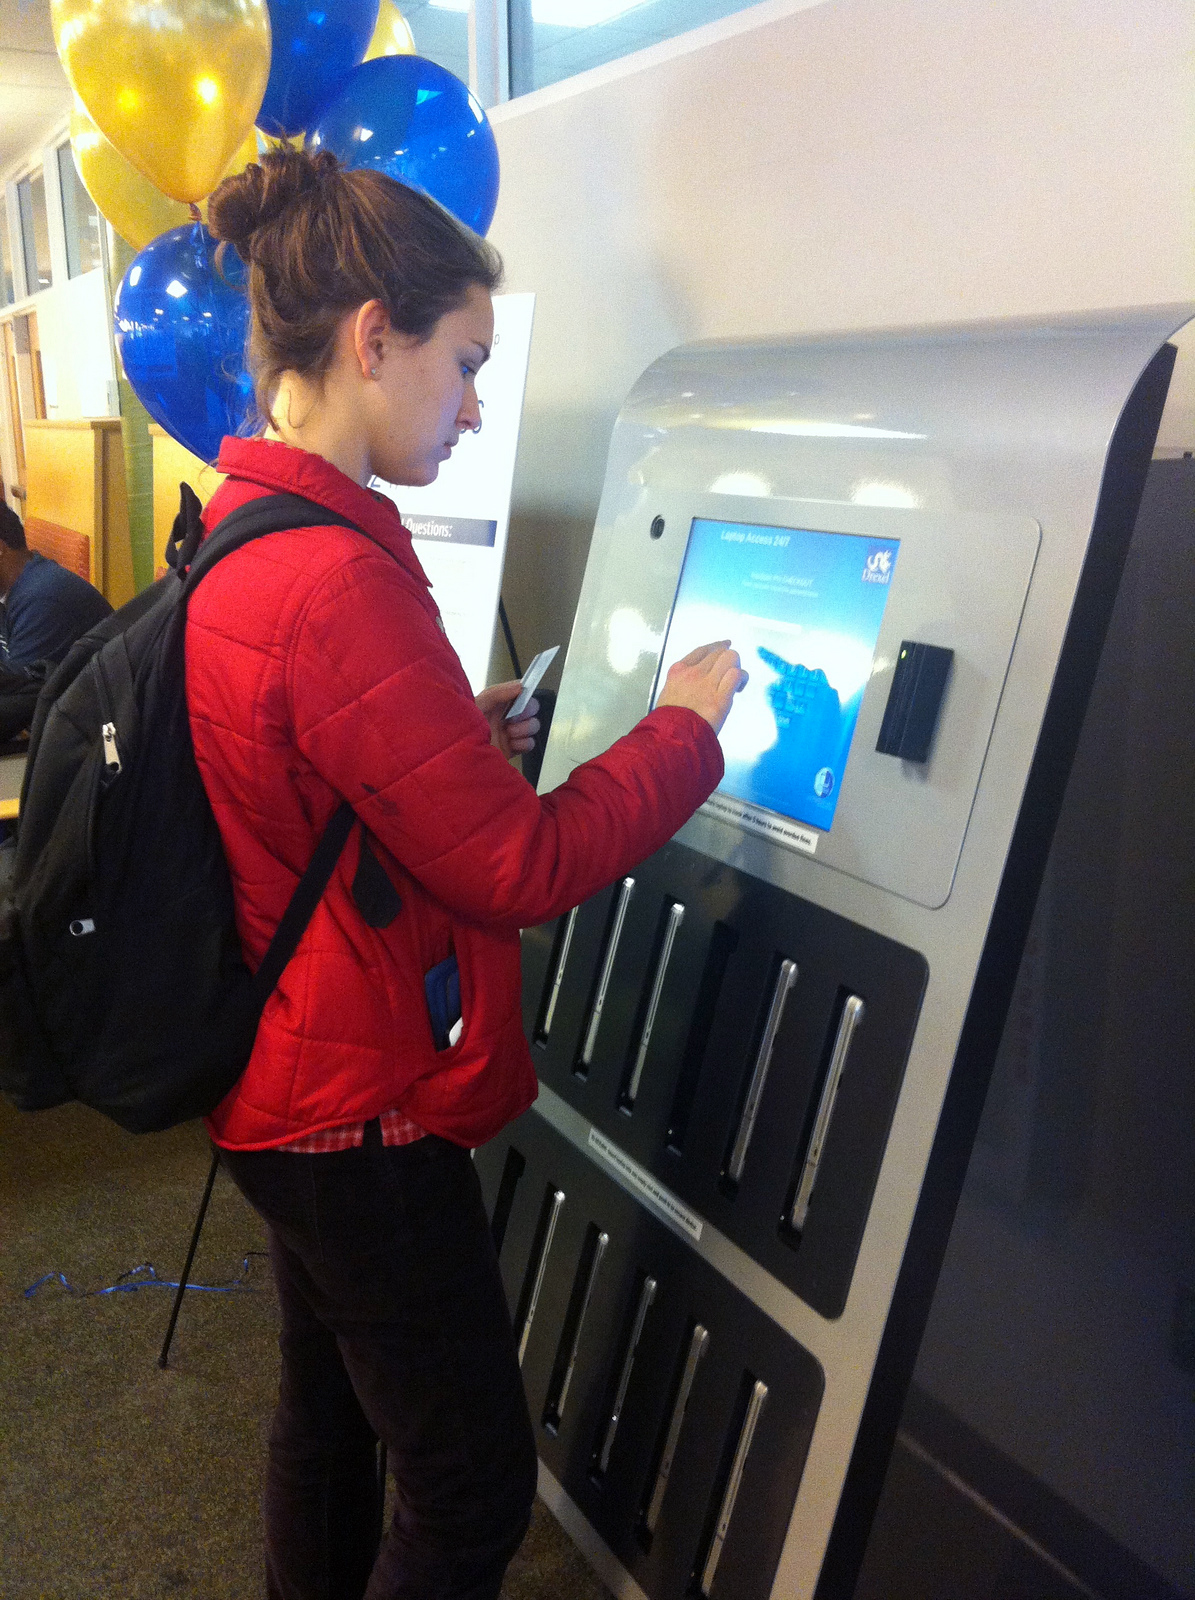 ↪ Ameerika ülikoolid paigaldavad sularahaautomaate MacBooksi rentimiseks